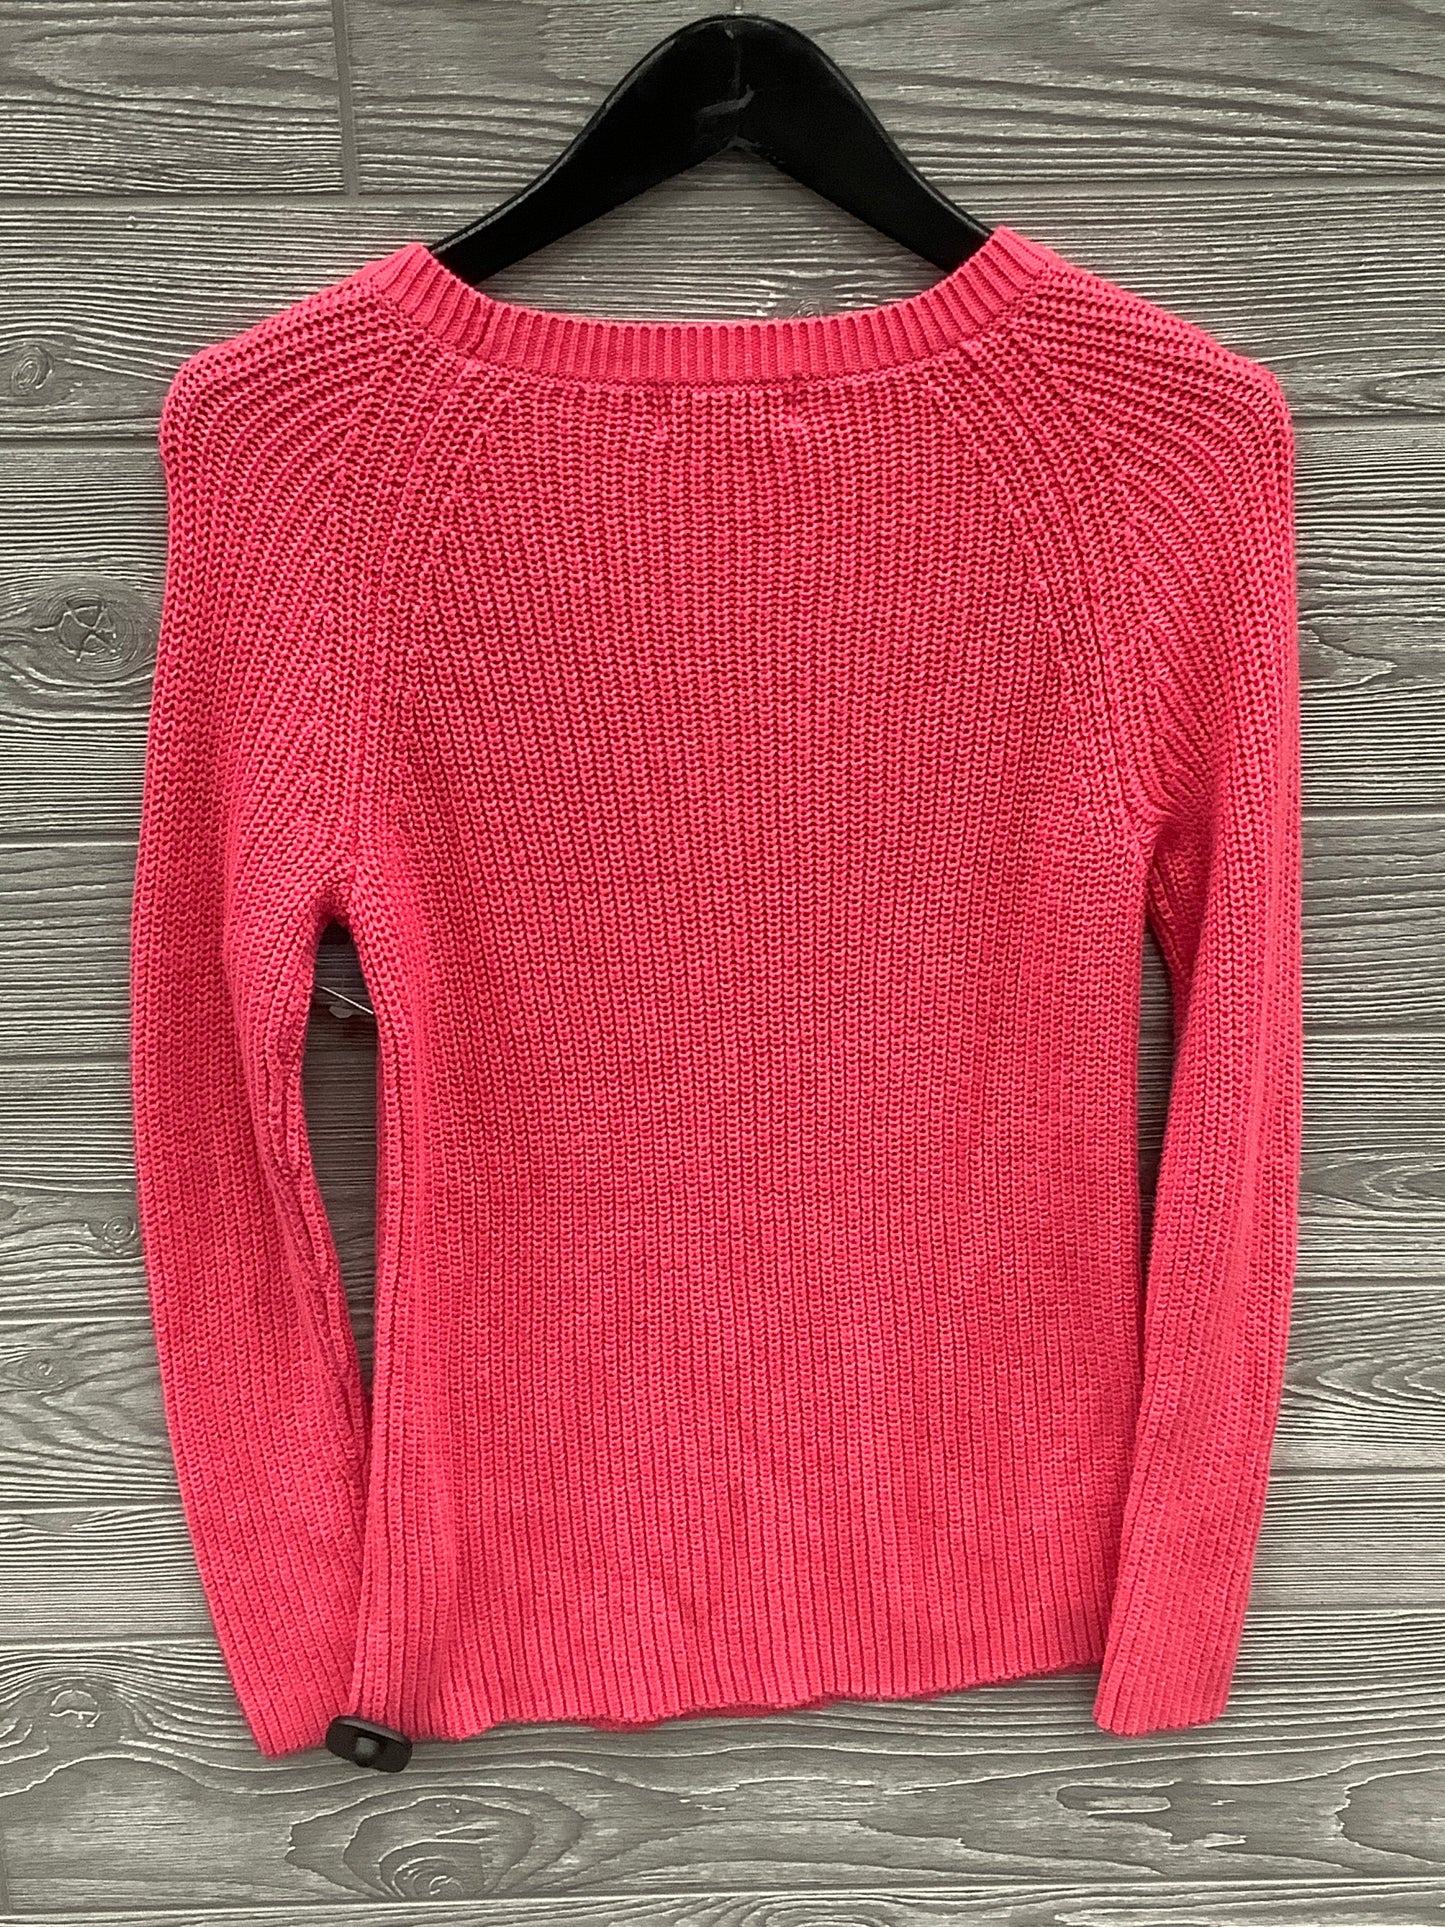 Sweater By Liz Claiborne  Size: S